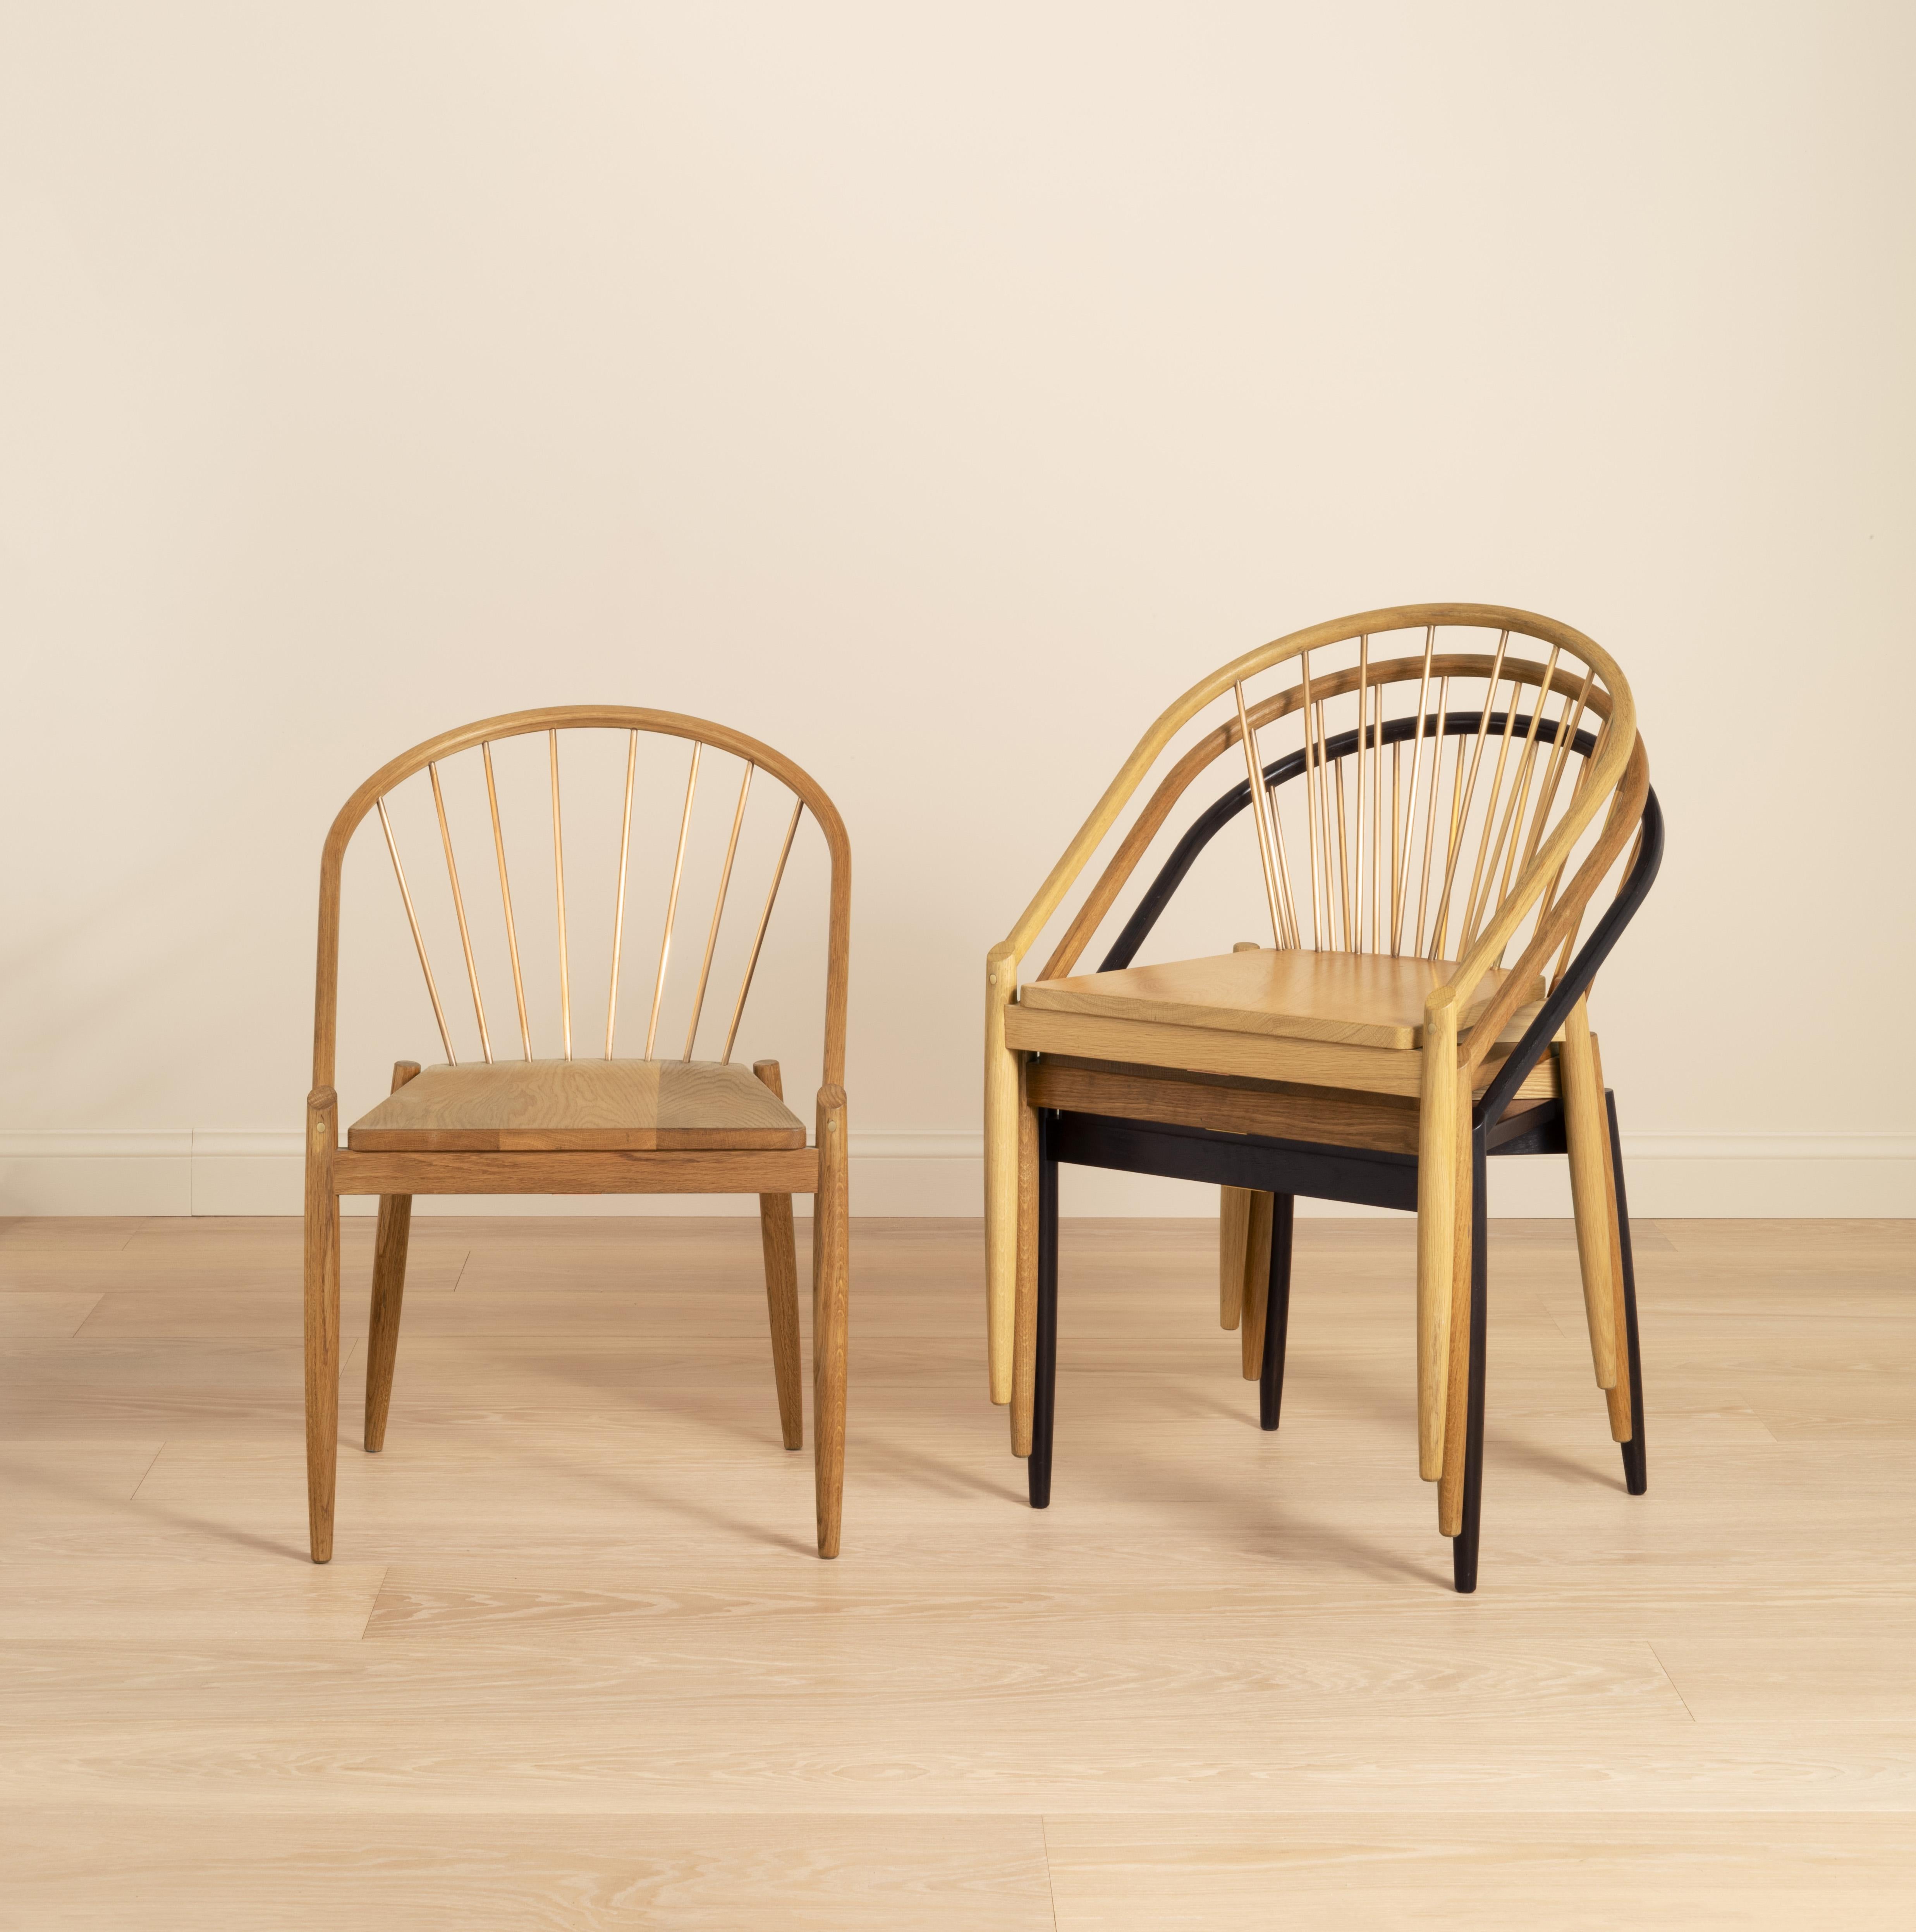 Une élégante chaise empilable inspirée du design danois classique, chaque chaise est fabriquée à la main dans notre atelier du Shropshire, en chêne massif avec des tiges en laiton massif et disponible en quatre finitions différentes : Light, Mid,